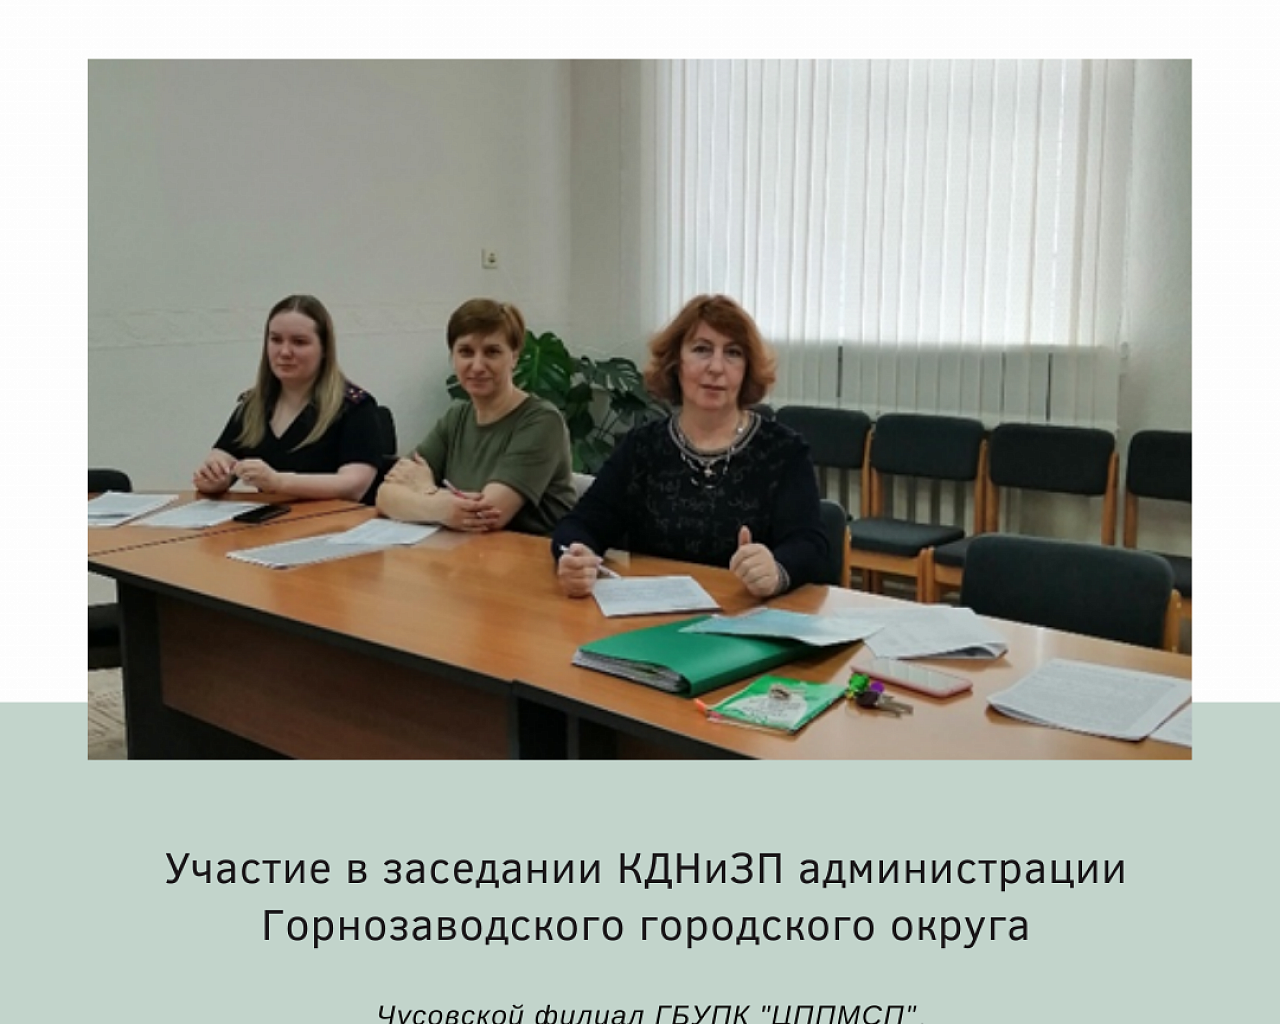 Участие в заседании КДНиЗП администрации Горнозаводского городского округа